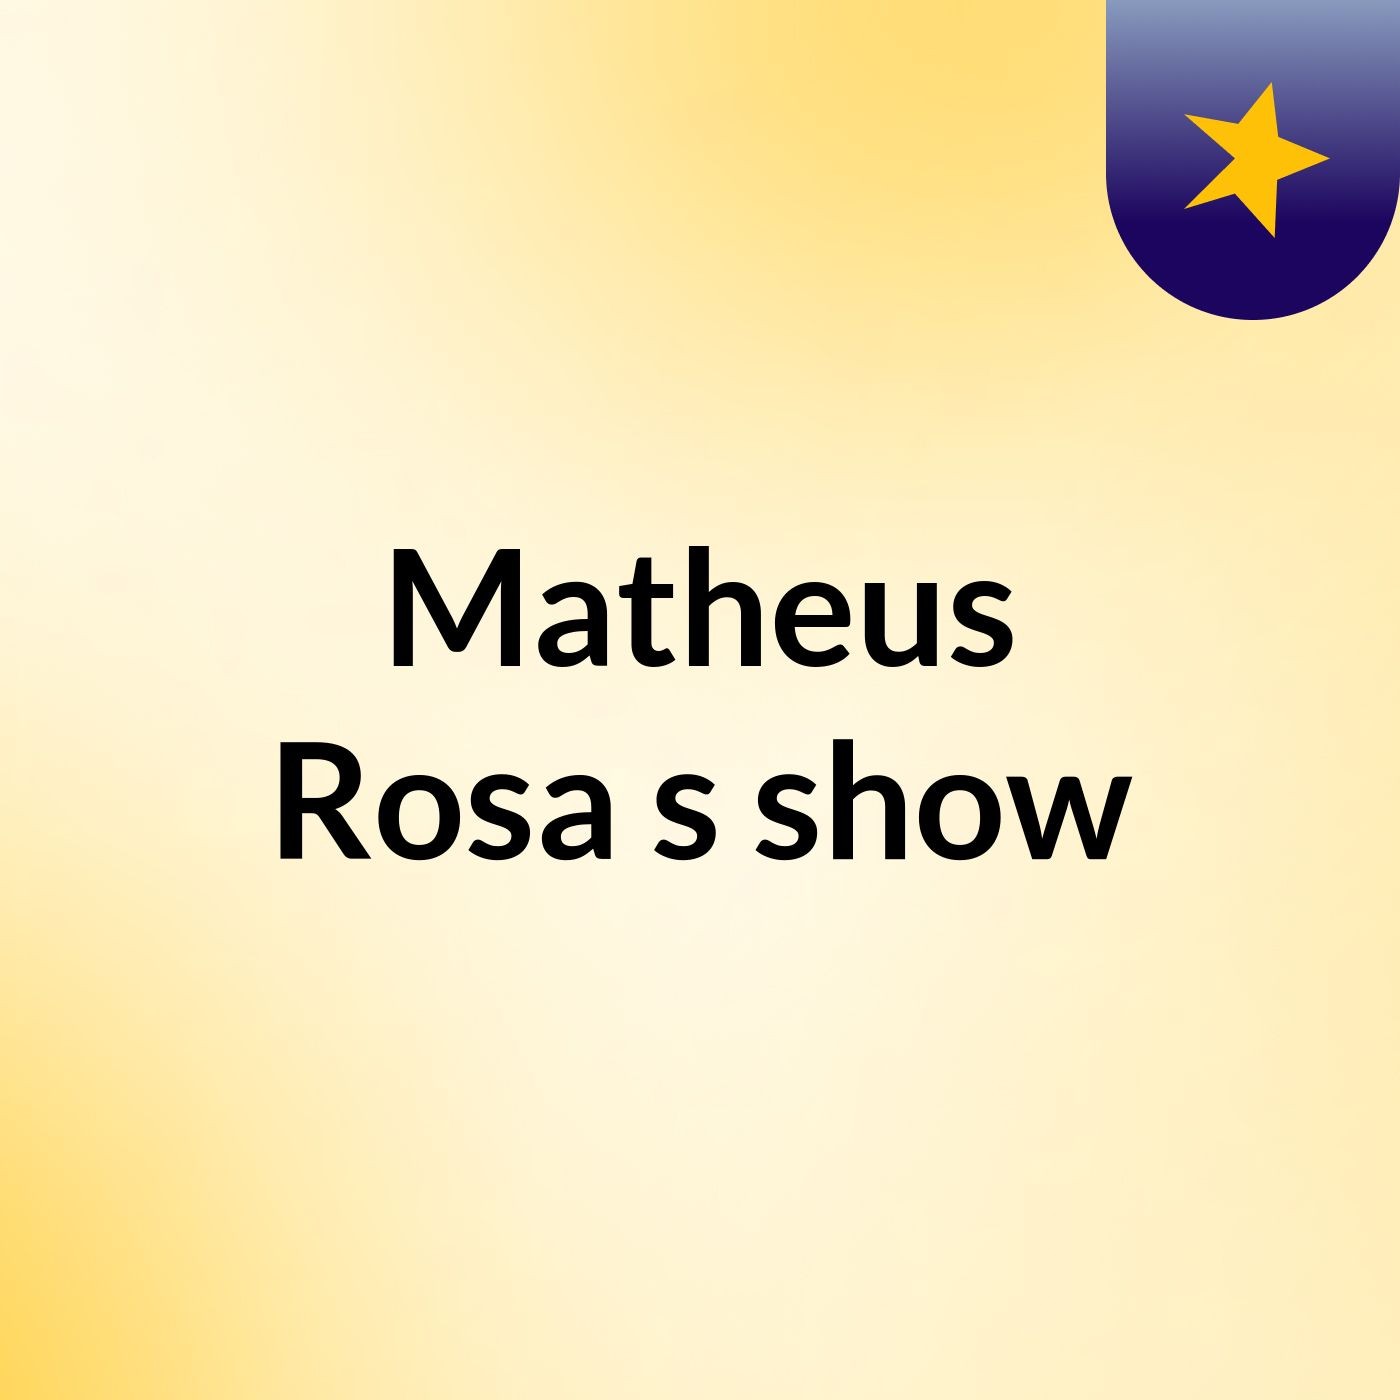 Matheus Rosa's show